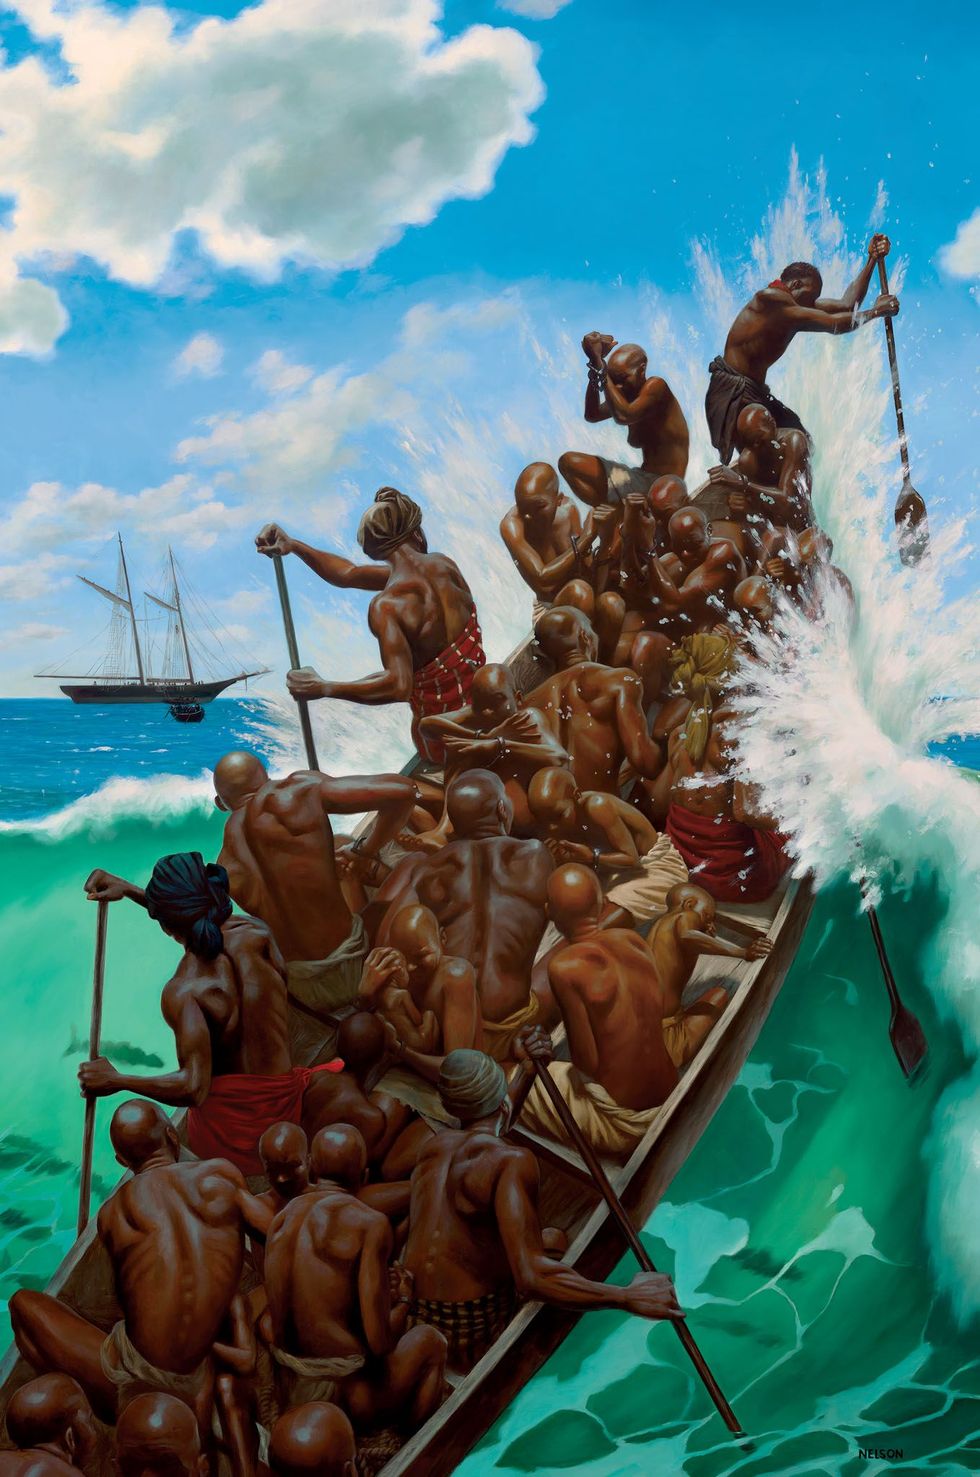 Afrikaanse gevangenen worden per boot vervoerd naar het slavenschip Clotilda in 1860 vanuit een slavenbolwerk in het huidige Benin